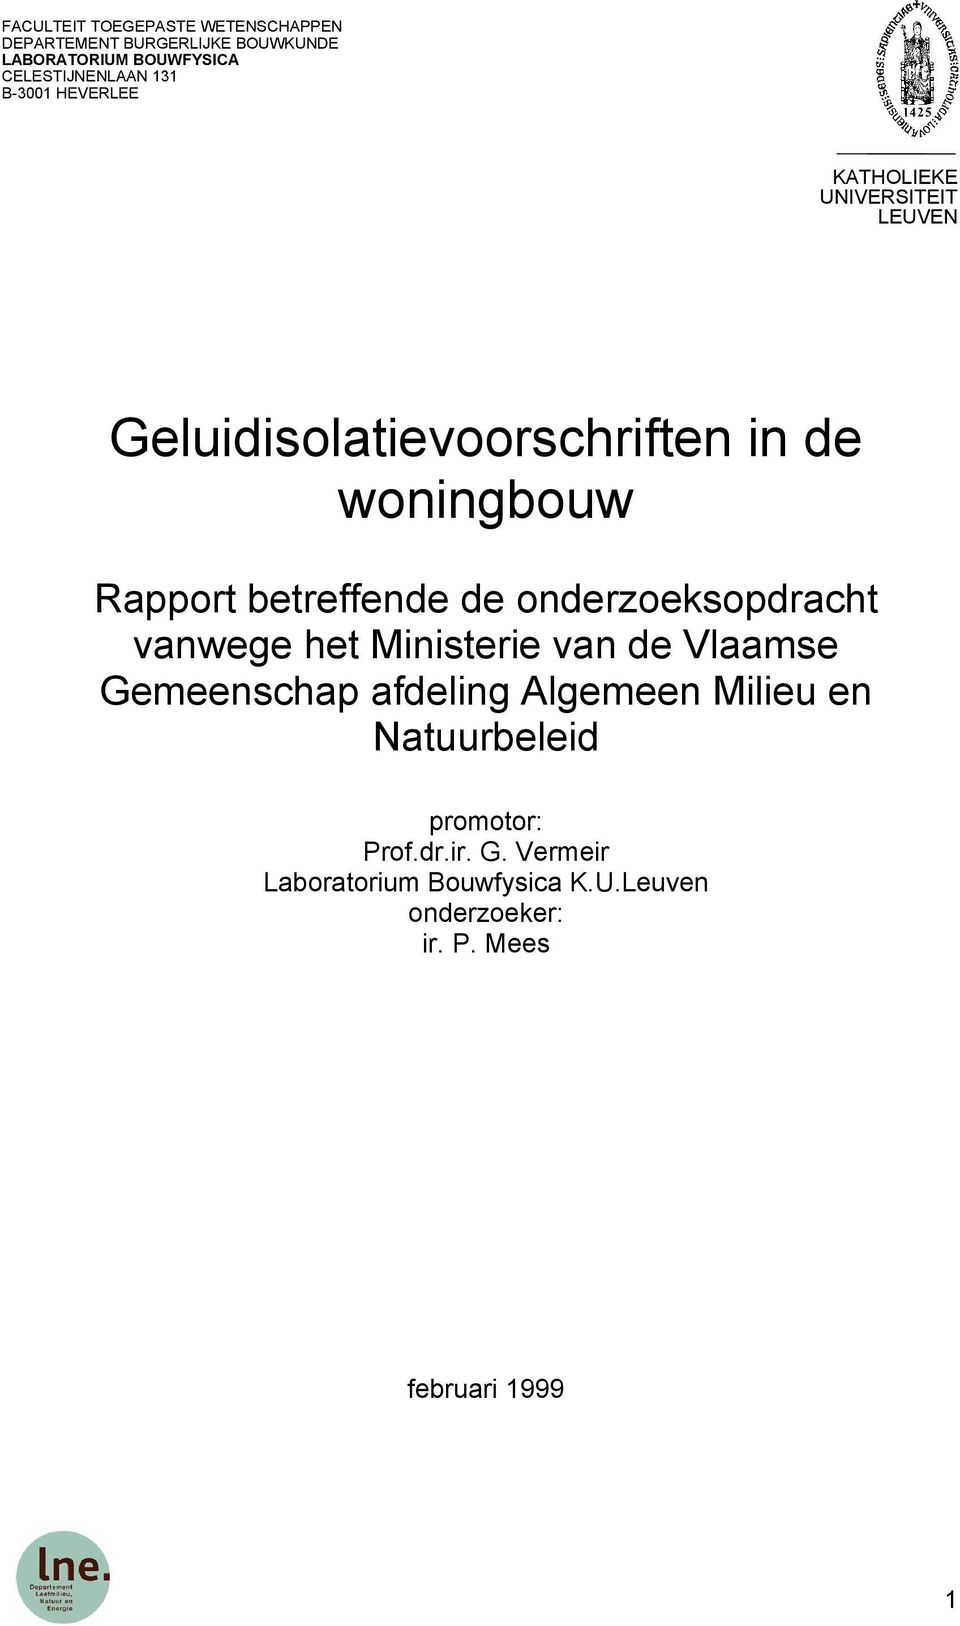 betreffende de onderzoeksopdracht vanwege het Ministerie van de Vlaamse Gemeenschap afdeling Algemeen Milieu en